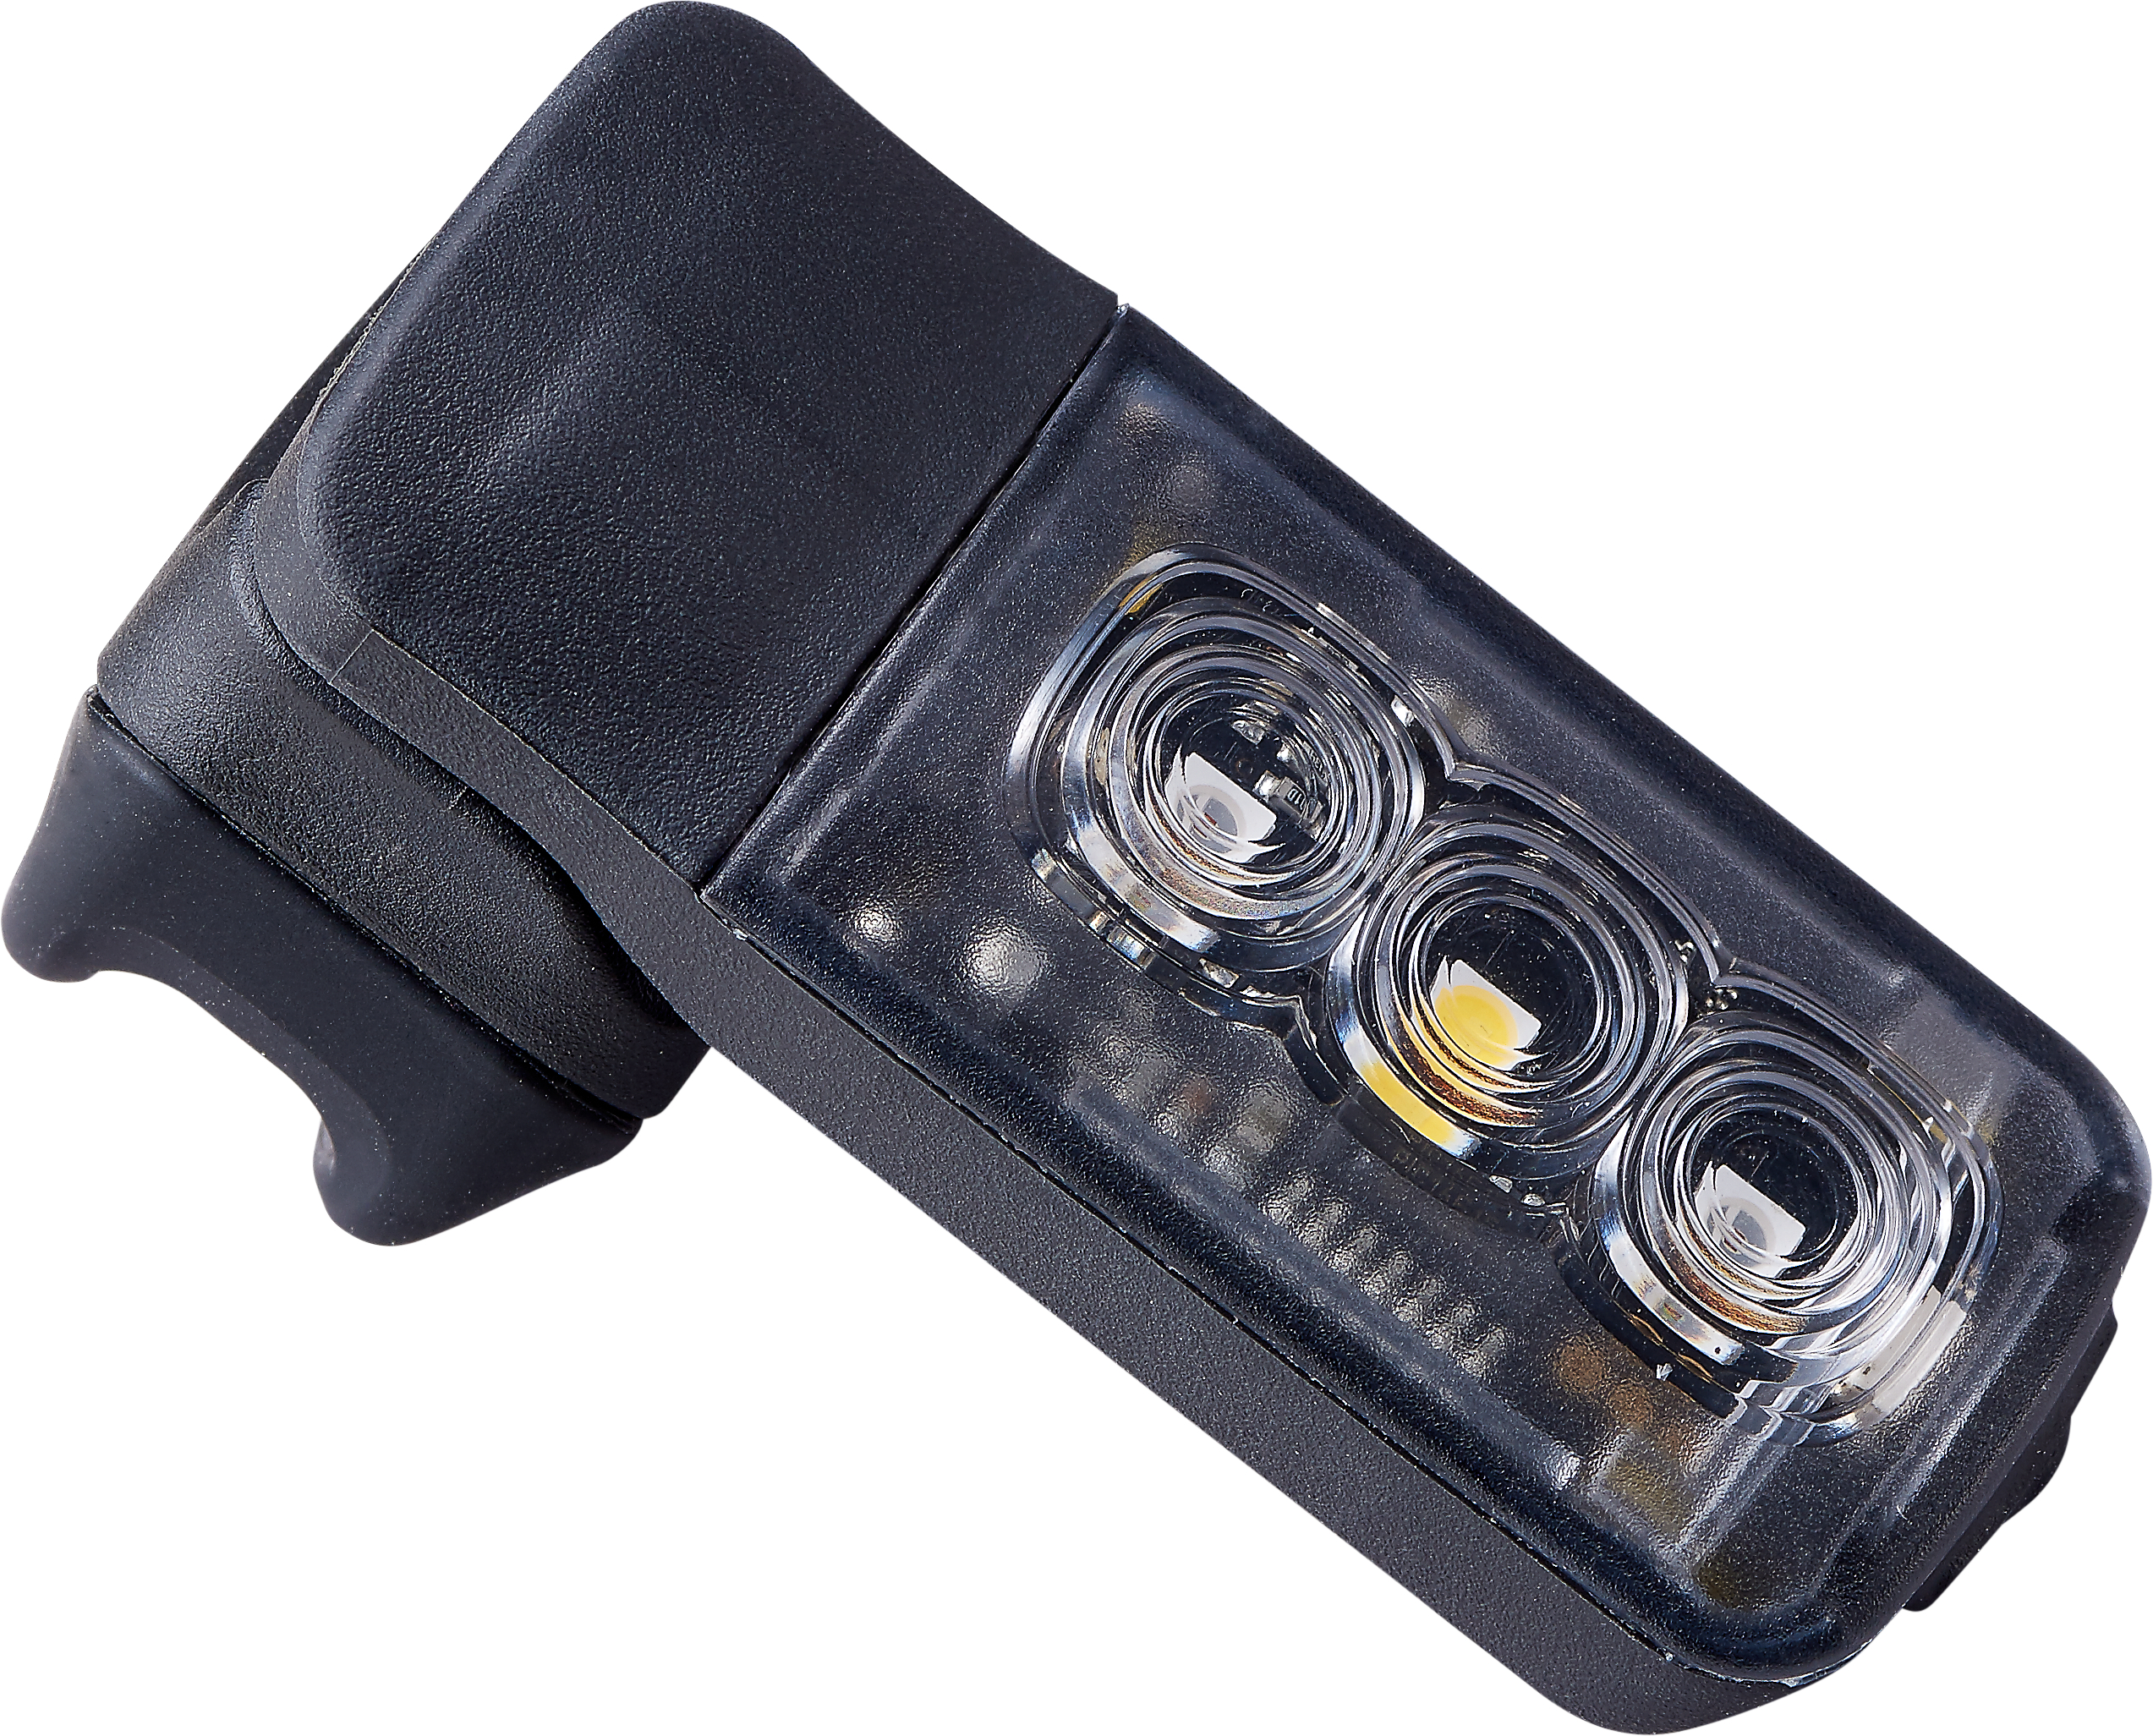 Specialized  Stix Switch Headlight/Taillight  Black